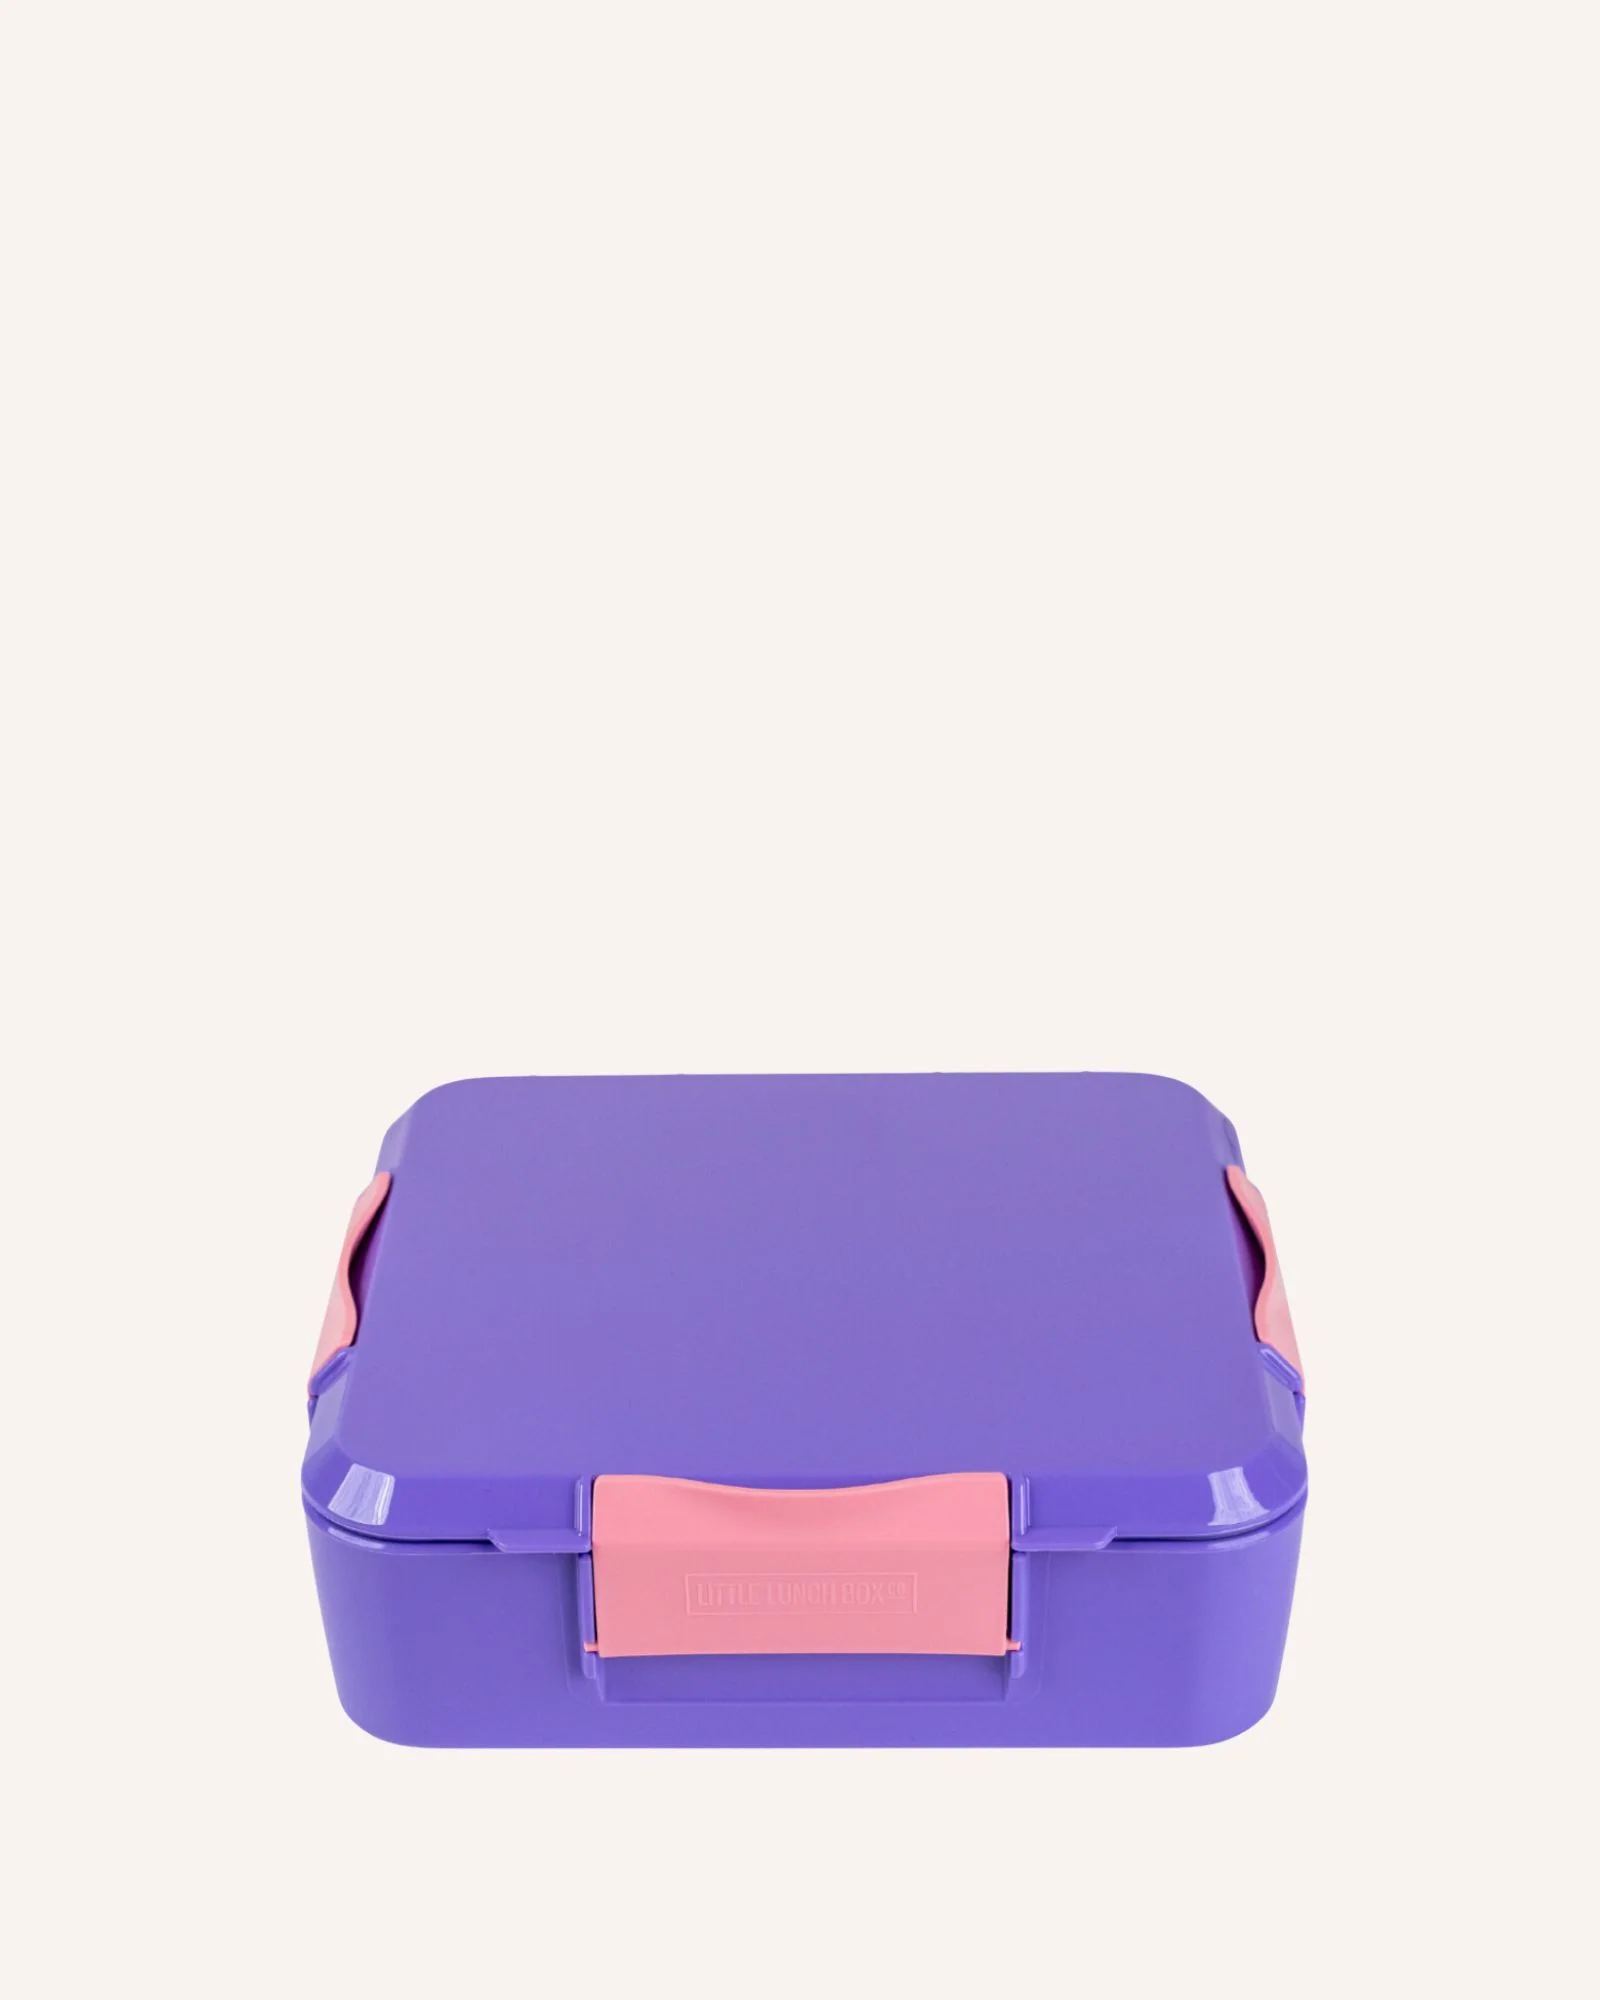 Little Lunch Box Co – Bento Plus - Grape